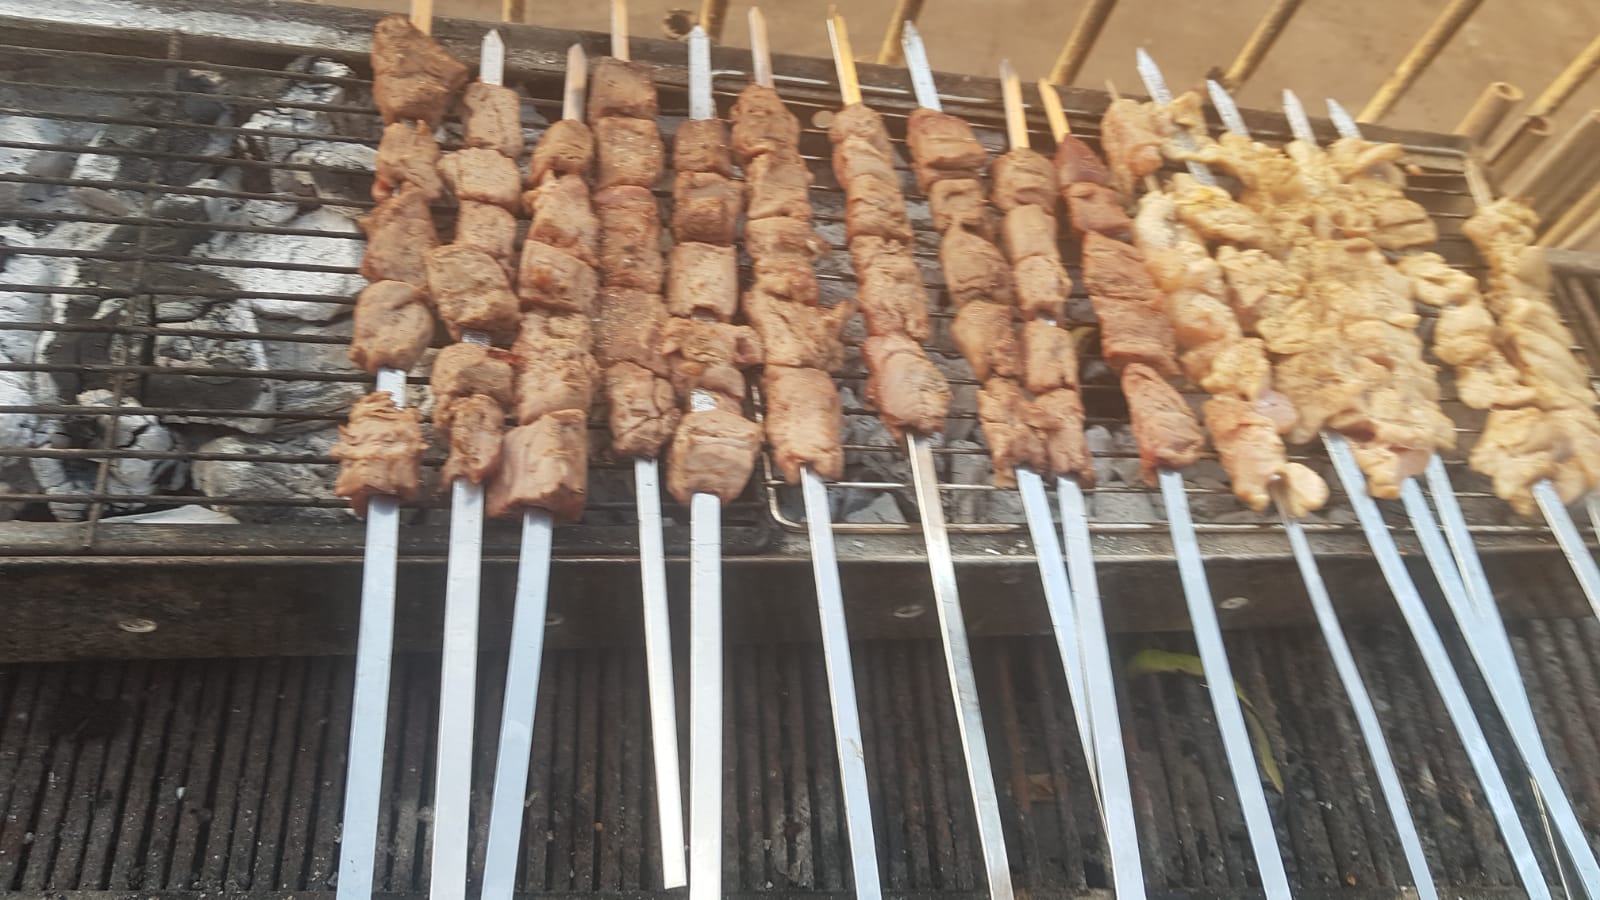  جديد في يافا - مطعم ومشاوي أبو خليل في شارع باحد يتسحاق 3